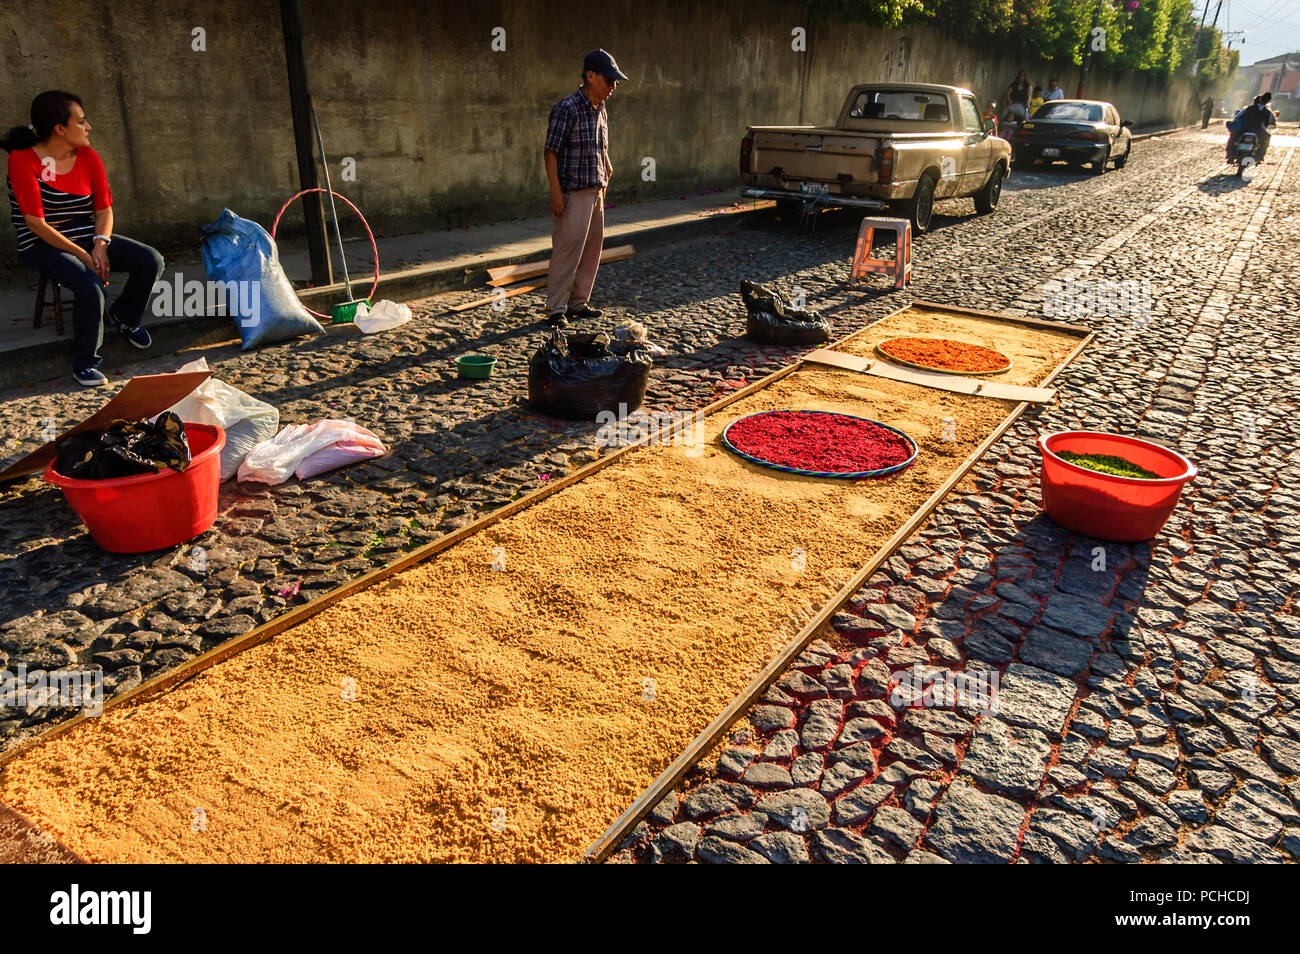 Antigua, Guatemala - 3. April 2015: Einheimische, die Karfreitagsprozession Teppich in der Stadt machen, mit dem berühmtesten Feierlichkeiten zur Karwoche in Lateinamerika. Stockfoto